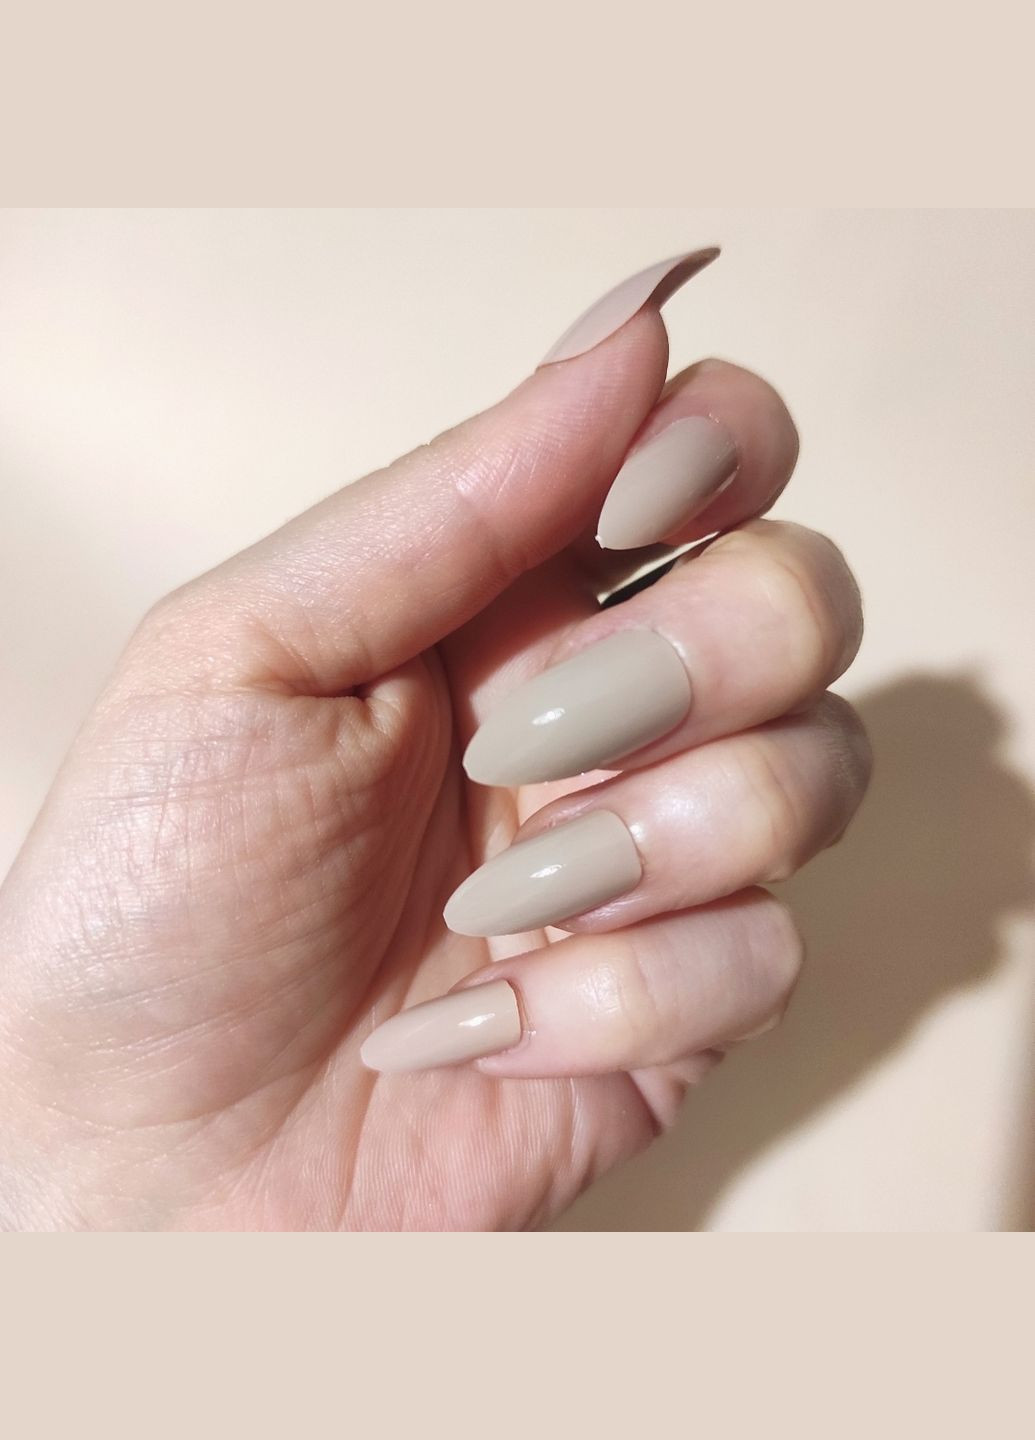 Накладные ногти с клеем Cosmetics False Nails Stiletto "Nude Mood" Нюдовый 24 шт. Technic (292128887)